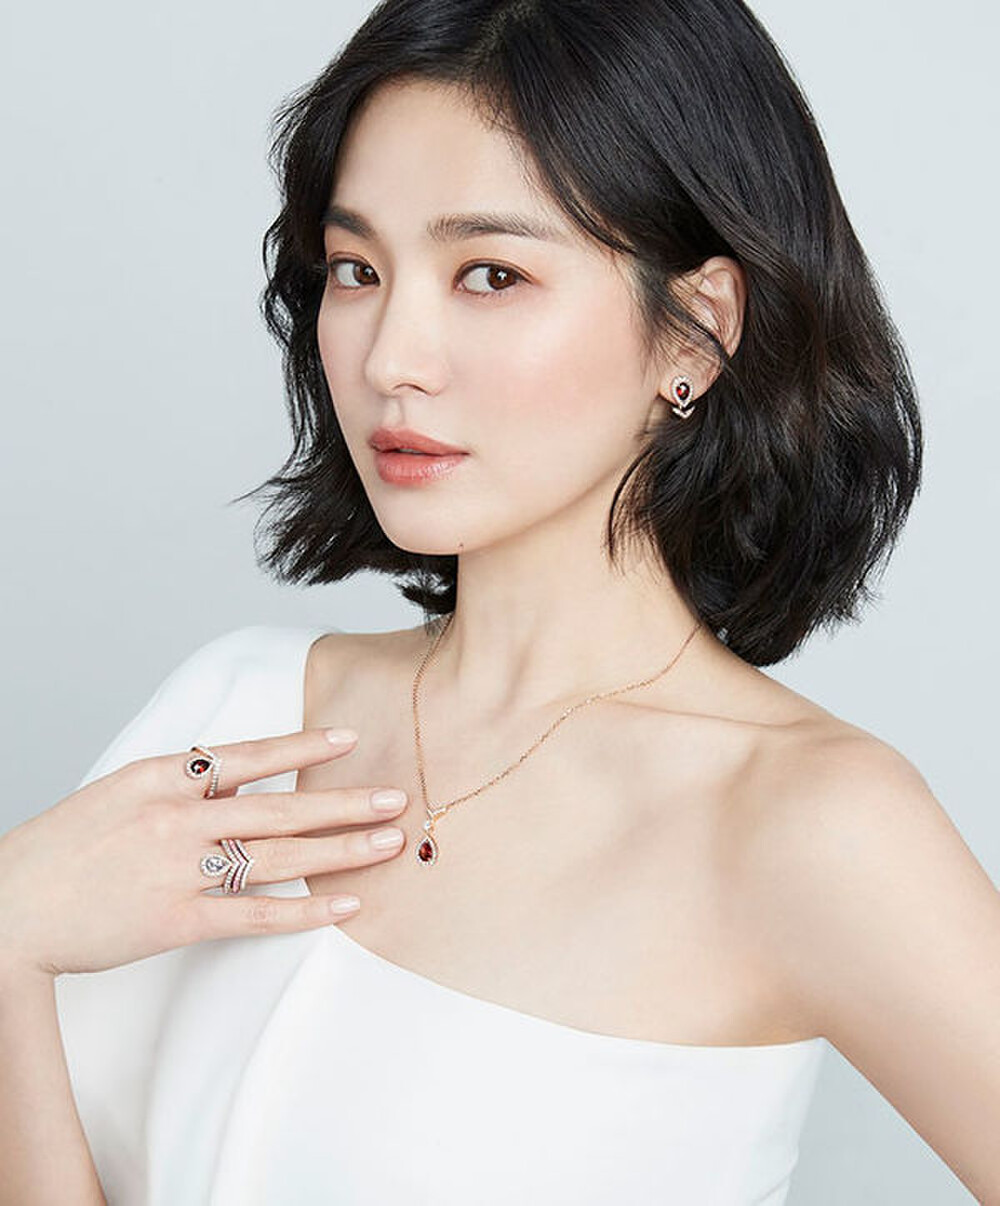 Song Hye Kyo xác nhận tham gia phim mới của biên kịch 'Hậu duệ mặt trời' - Ảnh 1